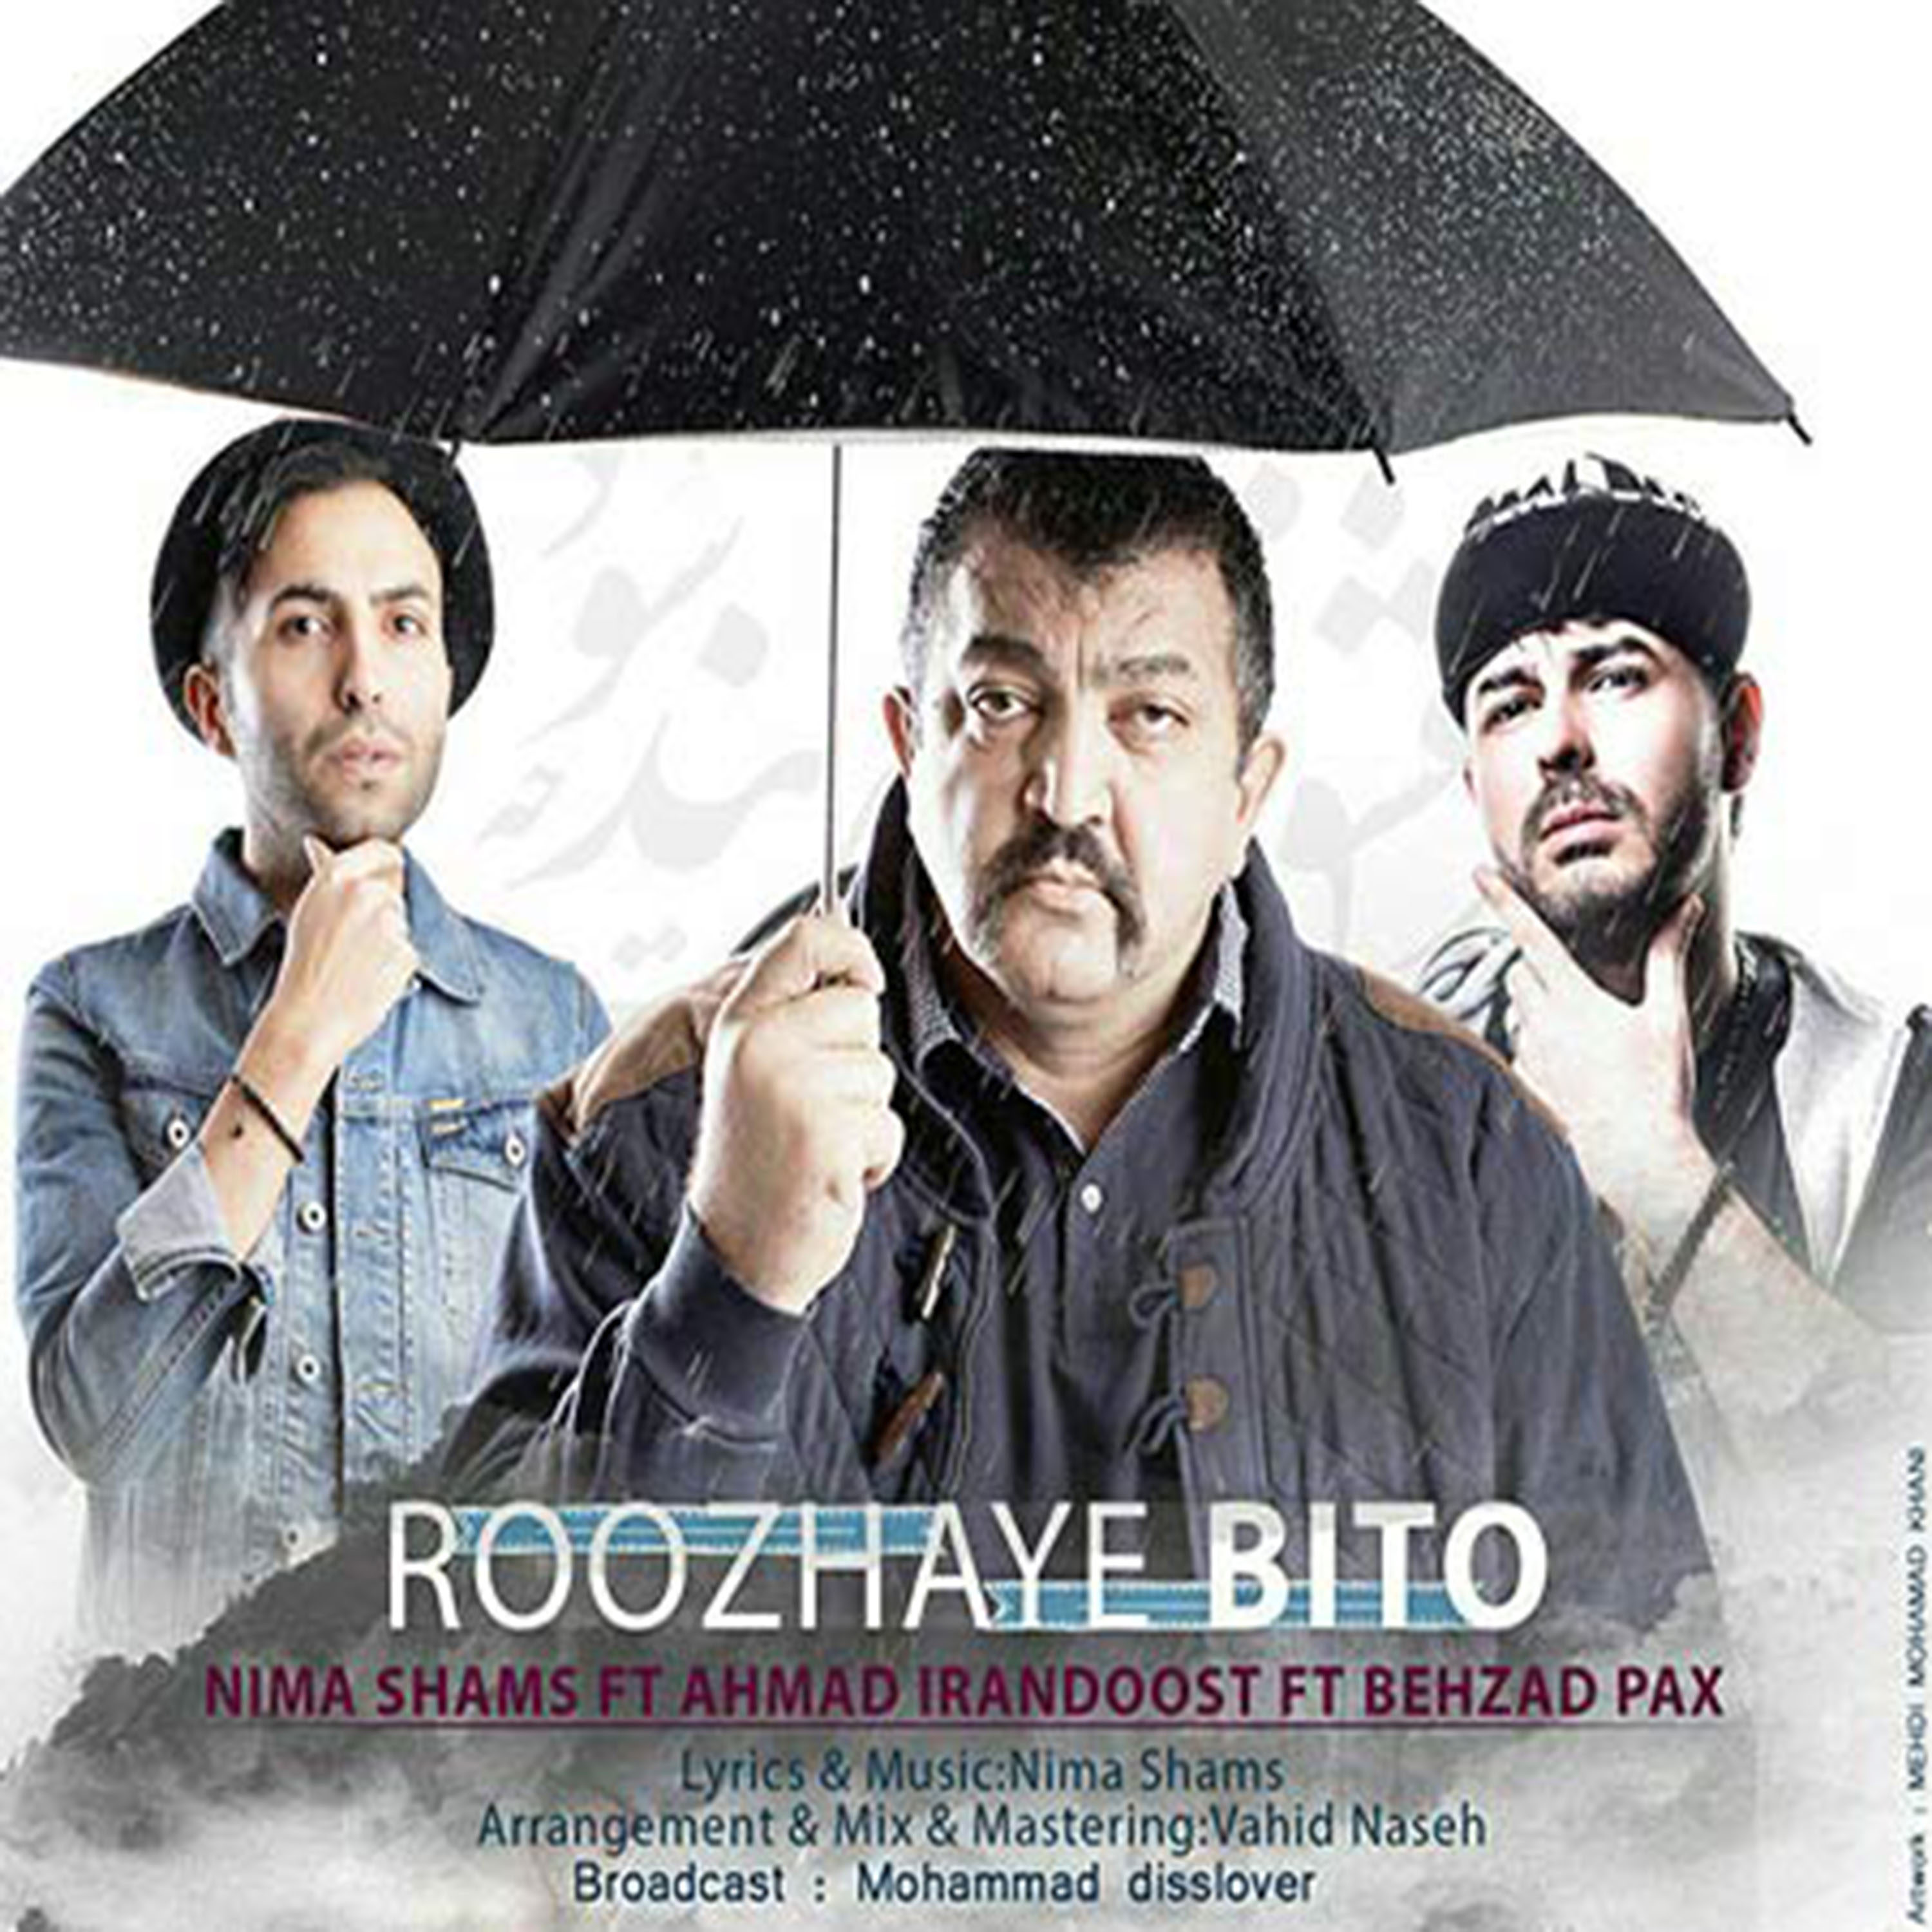  دانلود آهنگ جدید بهزاد پکس - روزای بی تو | Download New Music By Behzad Pax - Roozhaye Bito (feat. Nima Shams & Ahmad Irandoost)